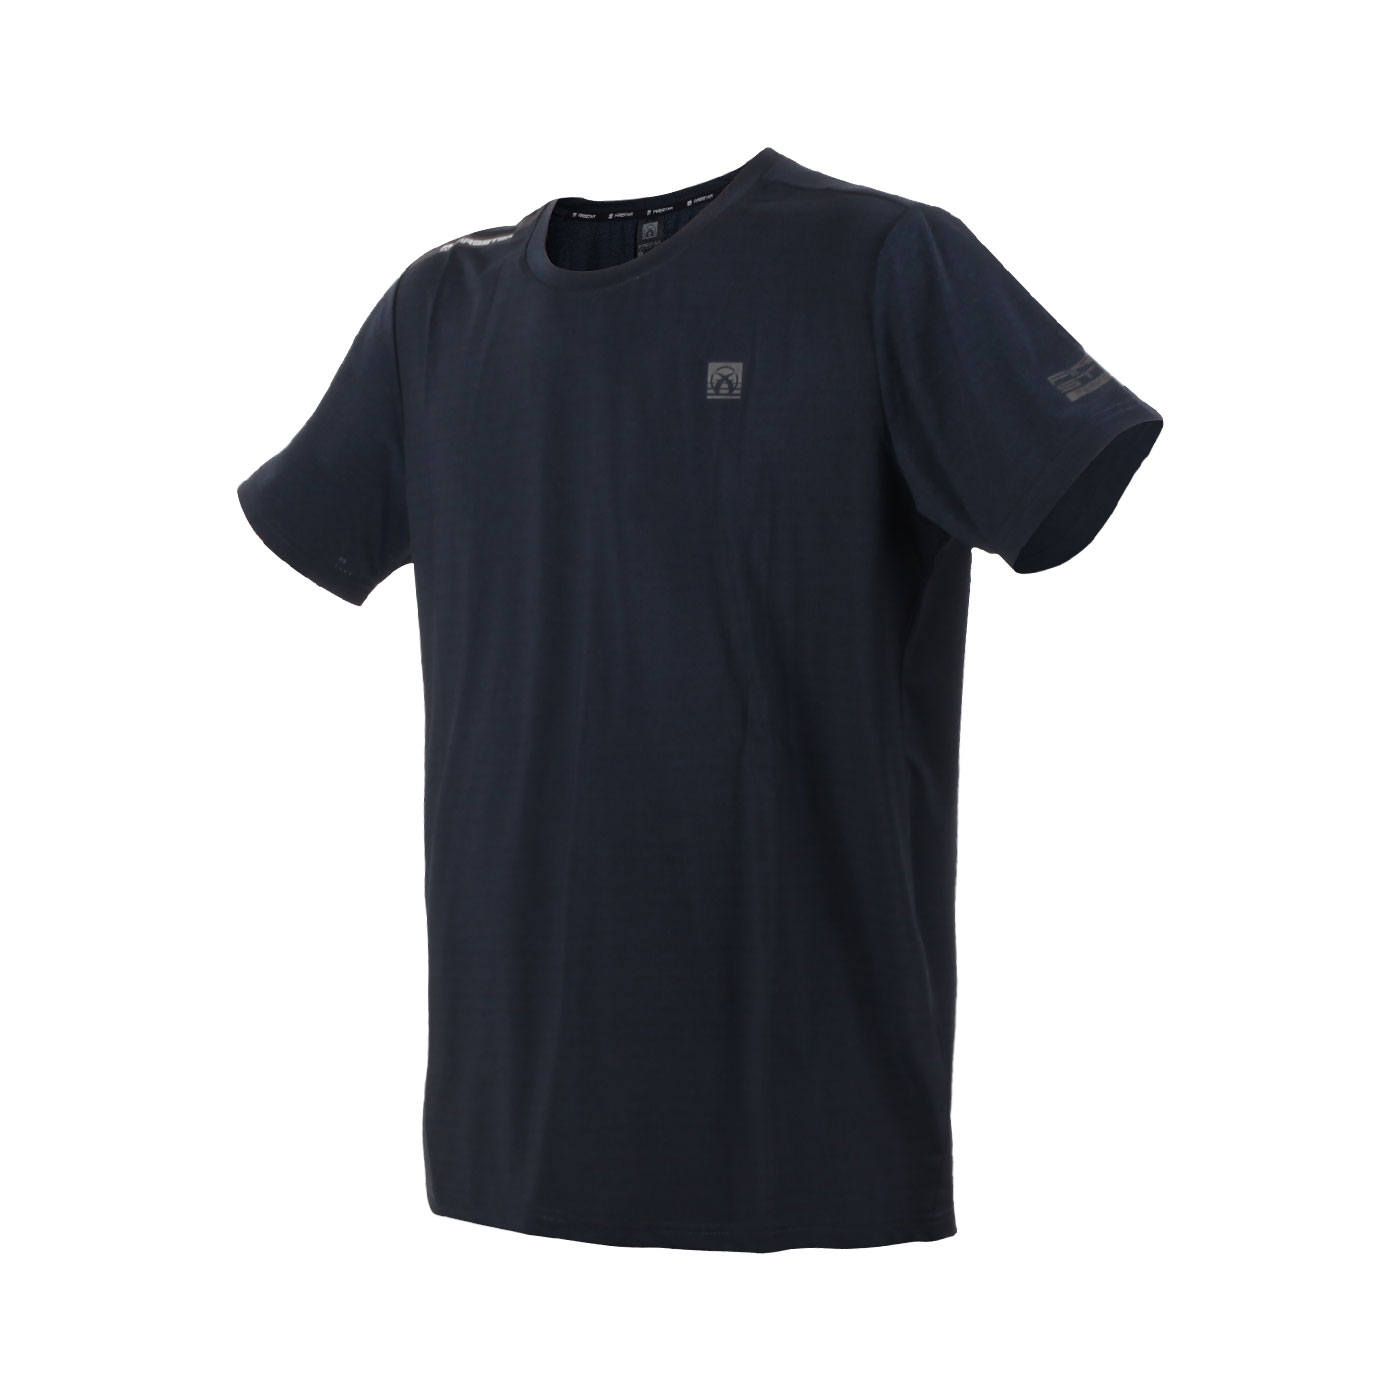 FIRESTAR 男款彈性圓領短袖T恤  D3233-98 - 麻花墨藍黑